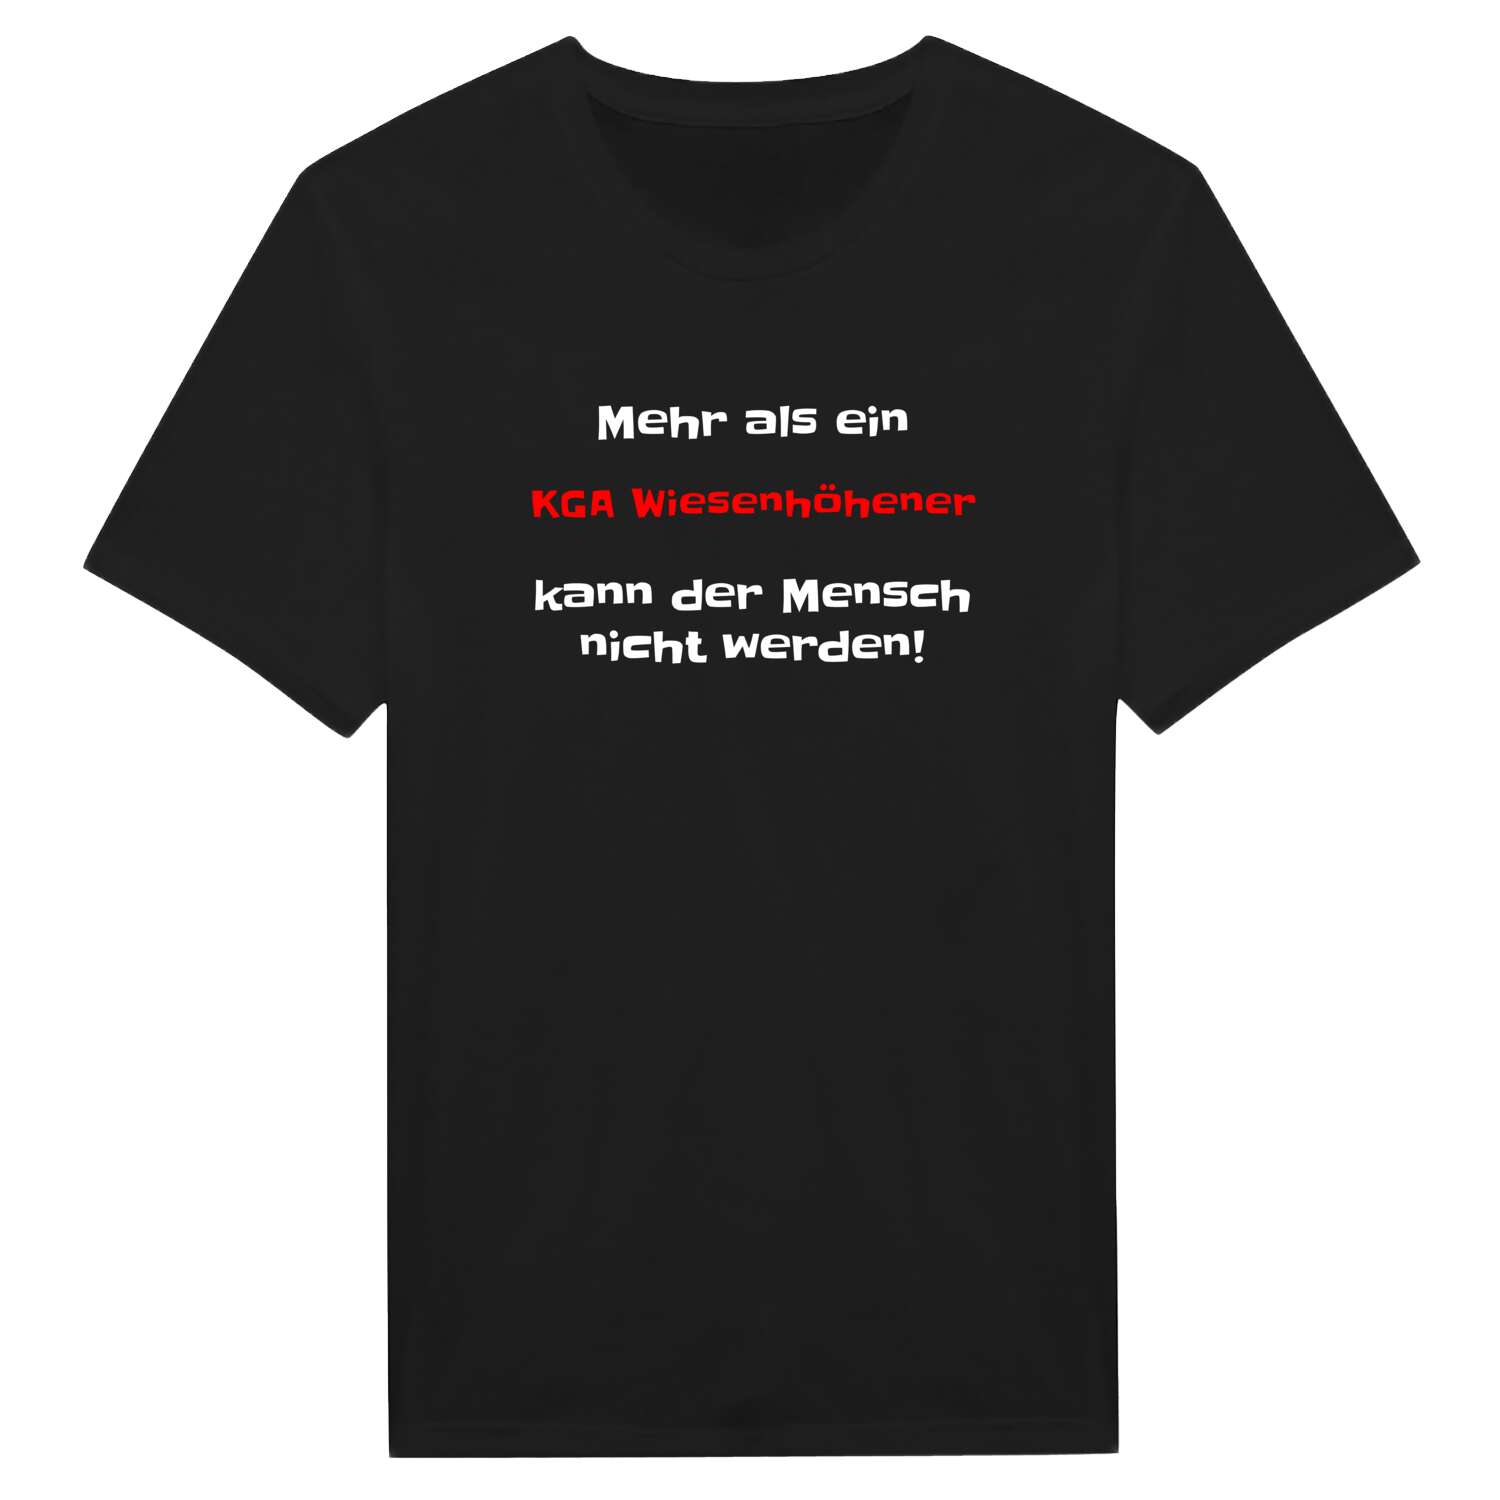 KGA Wiesenhöhe T-Shirt »Mehr als ein«